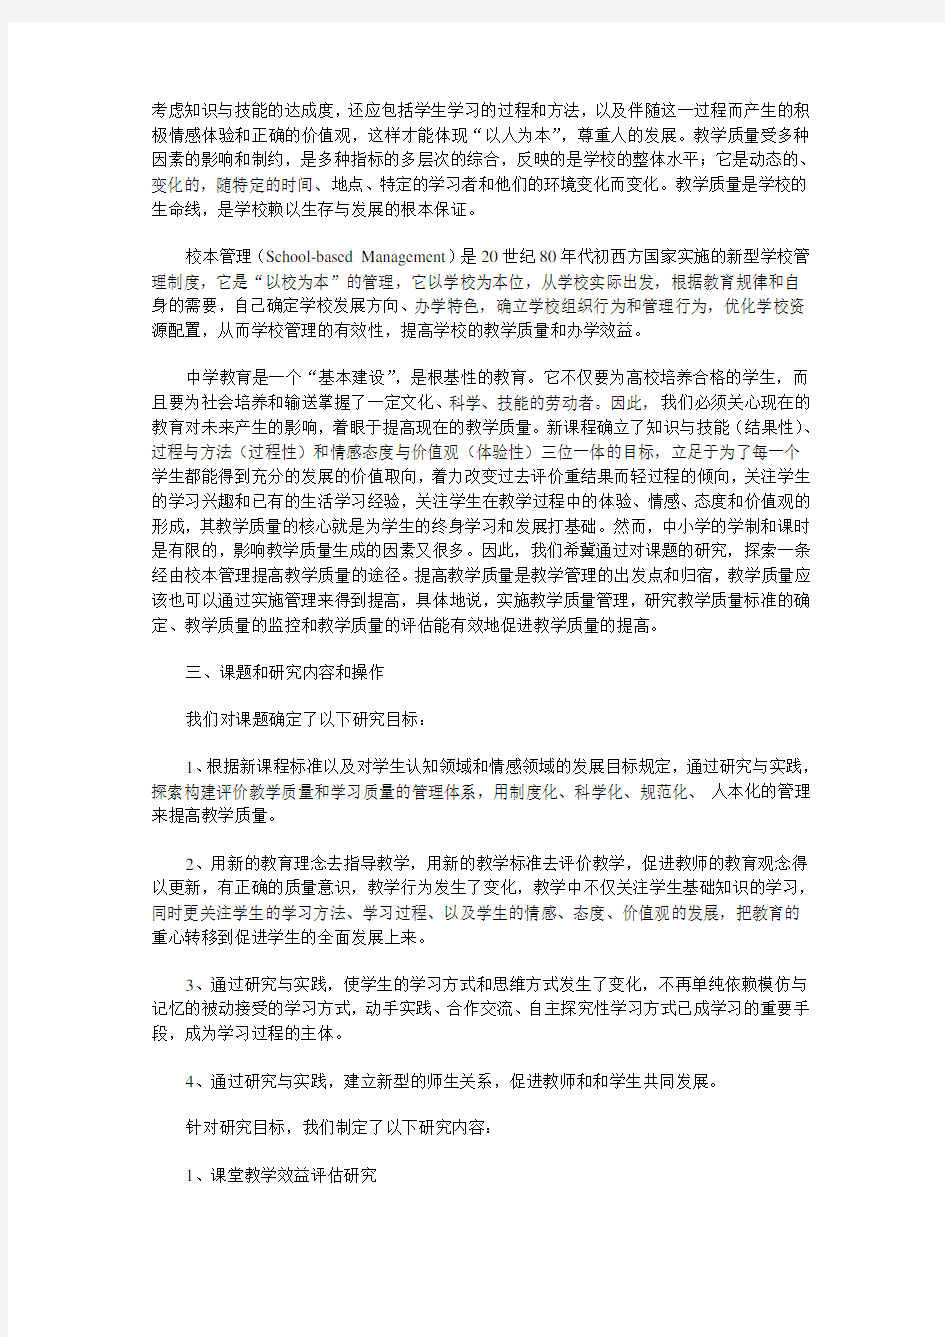 江苏省教育科学规划领导小组办公室